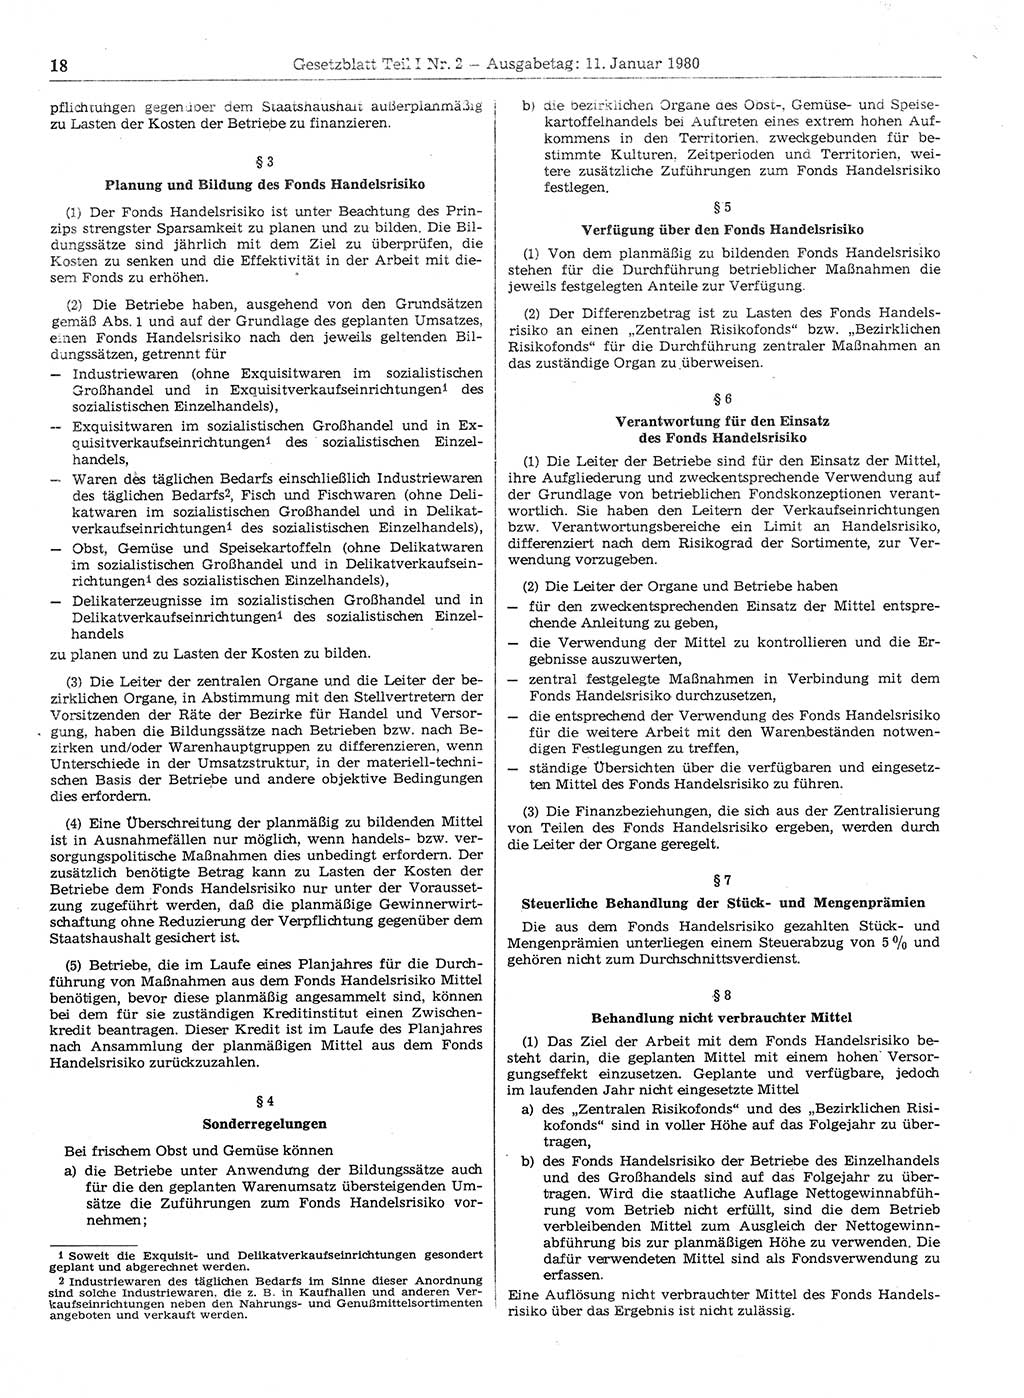 Gesetzblatt (GBl.) der Deutschen Demokratischen Republik (DDR) Teil Ⅰ 1980, Seite 18 (GBl. DDR Ⅰ 1980, S. 18)